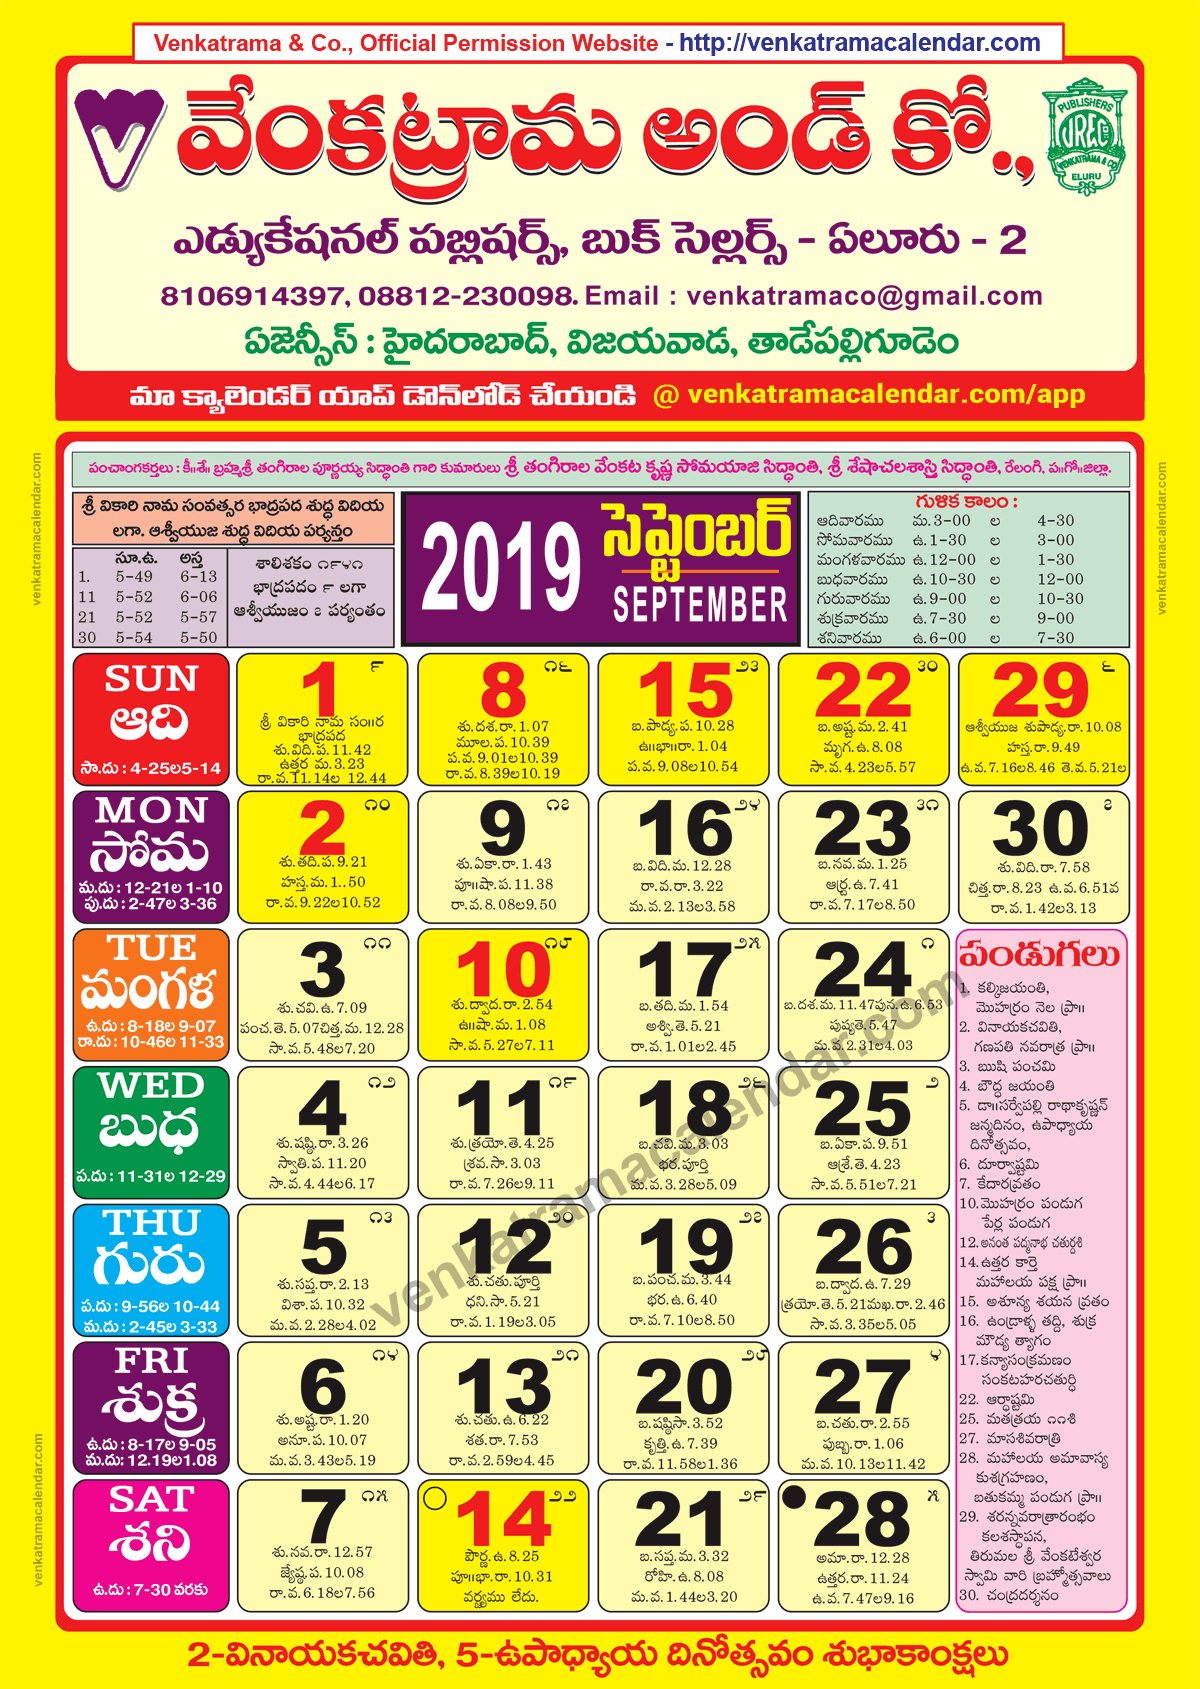 venkatrama-co-2019-september-telugu-calendar-colour